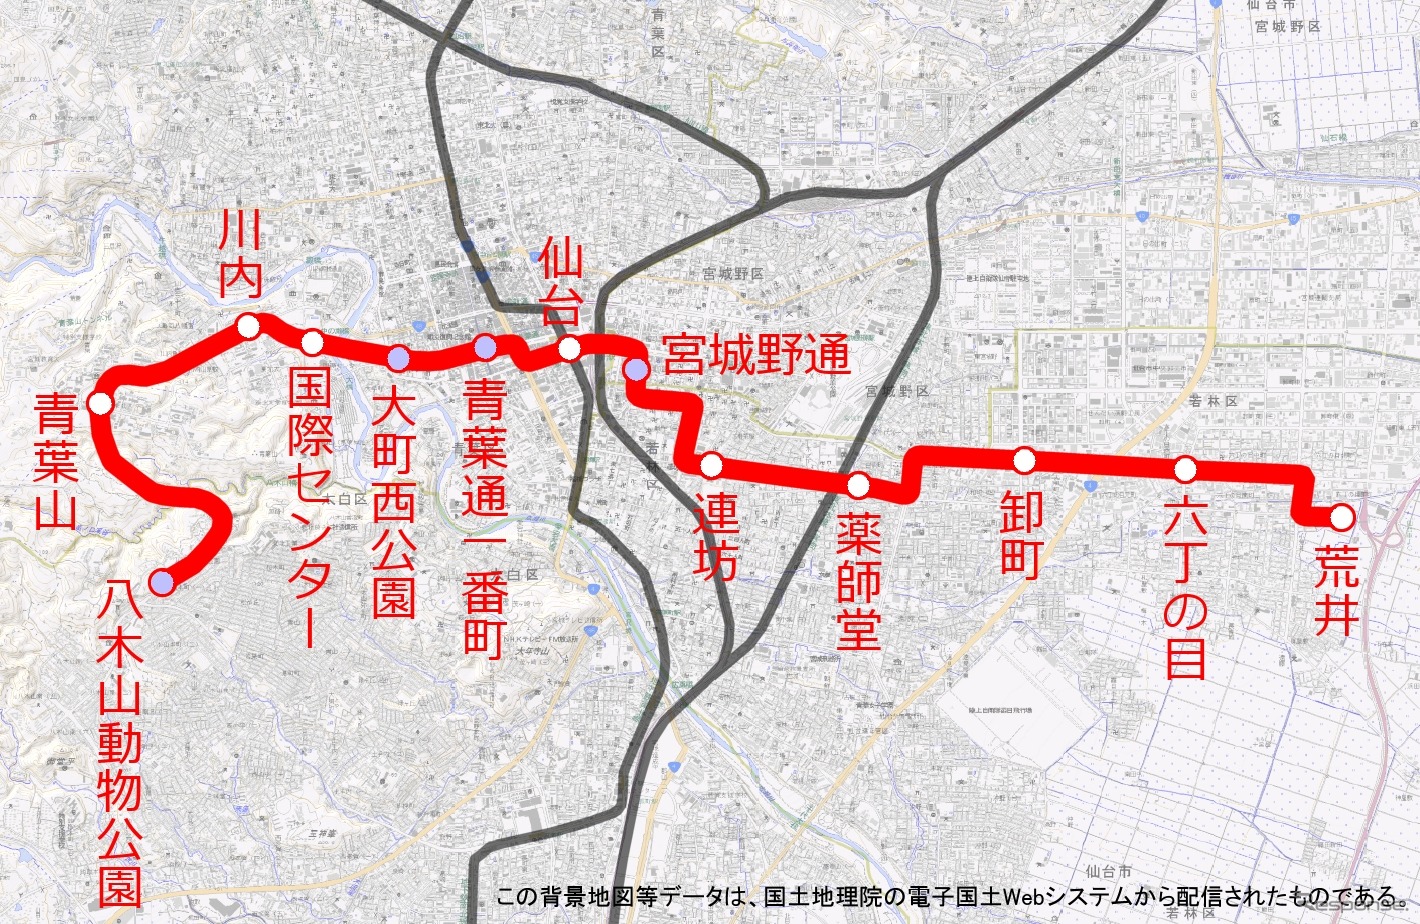 東西線の路線図。仙台市の地下鉄は現在の南北線に次いで2本目となる。